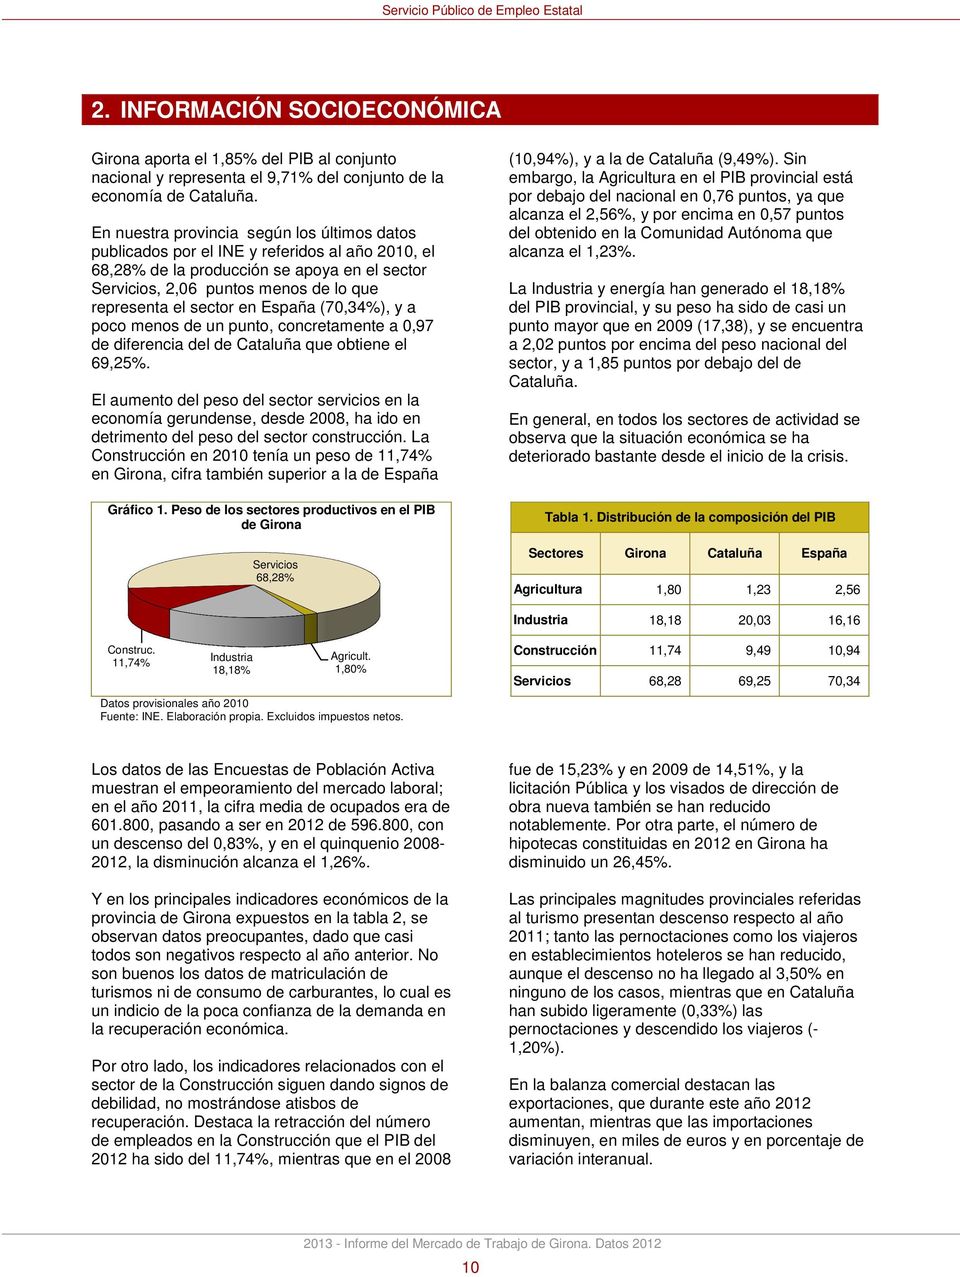 sector en España (70,34%), y a poco menos de un punto, concretamente a 0,97 de diferencia del de Cataluña que obtiene el 69,25%.